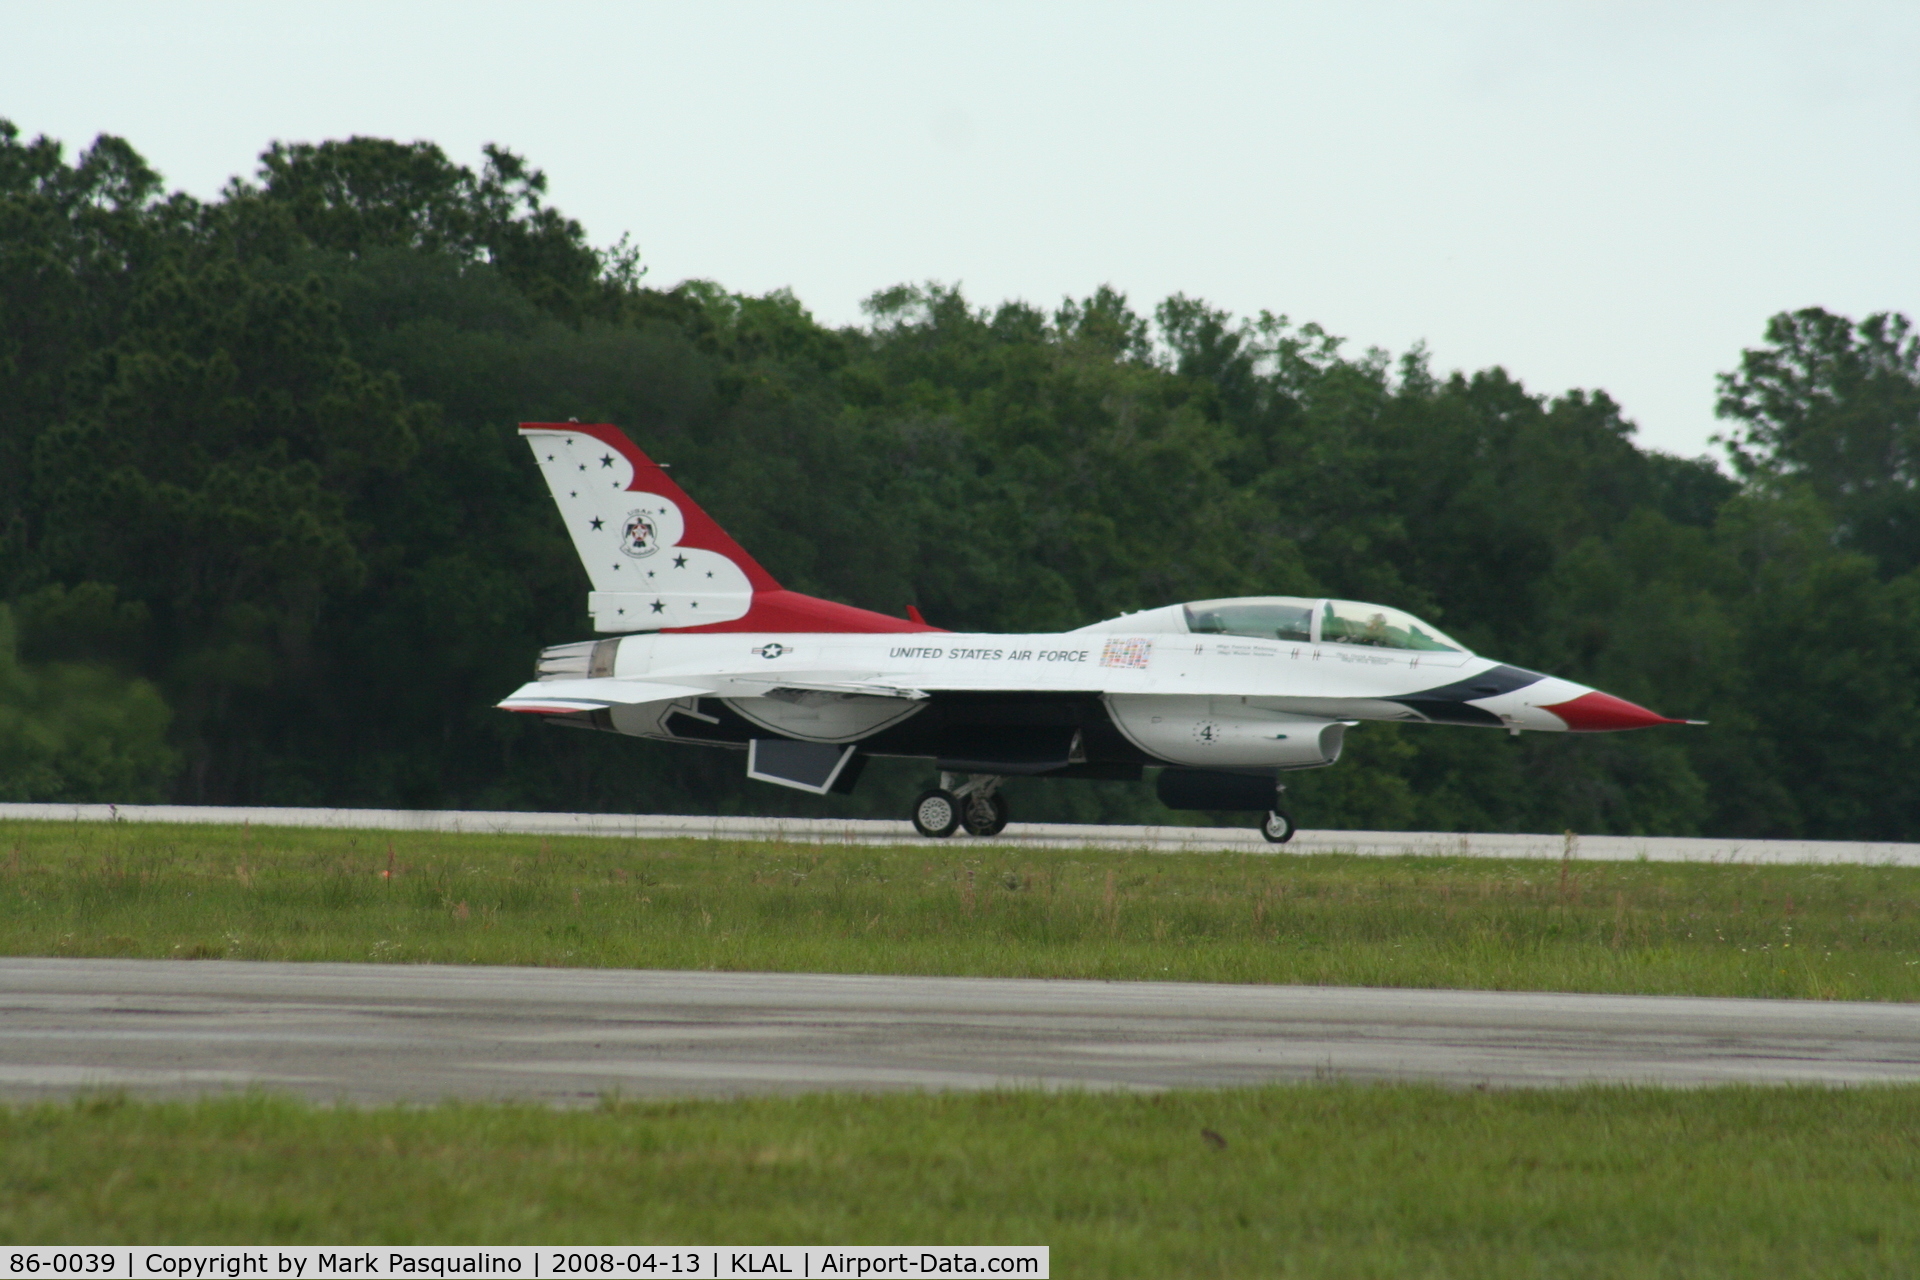 86-0039, 1986 General Dynamics F-16D Fighting Falcon C/N 5D-43, F-16D